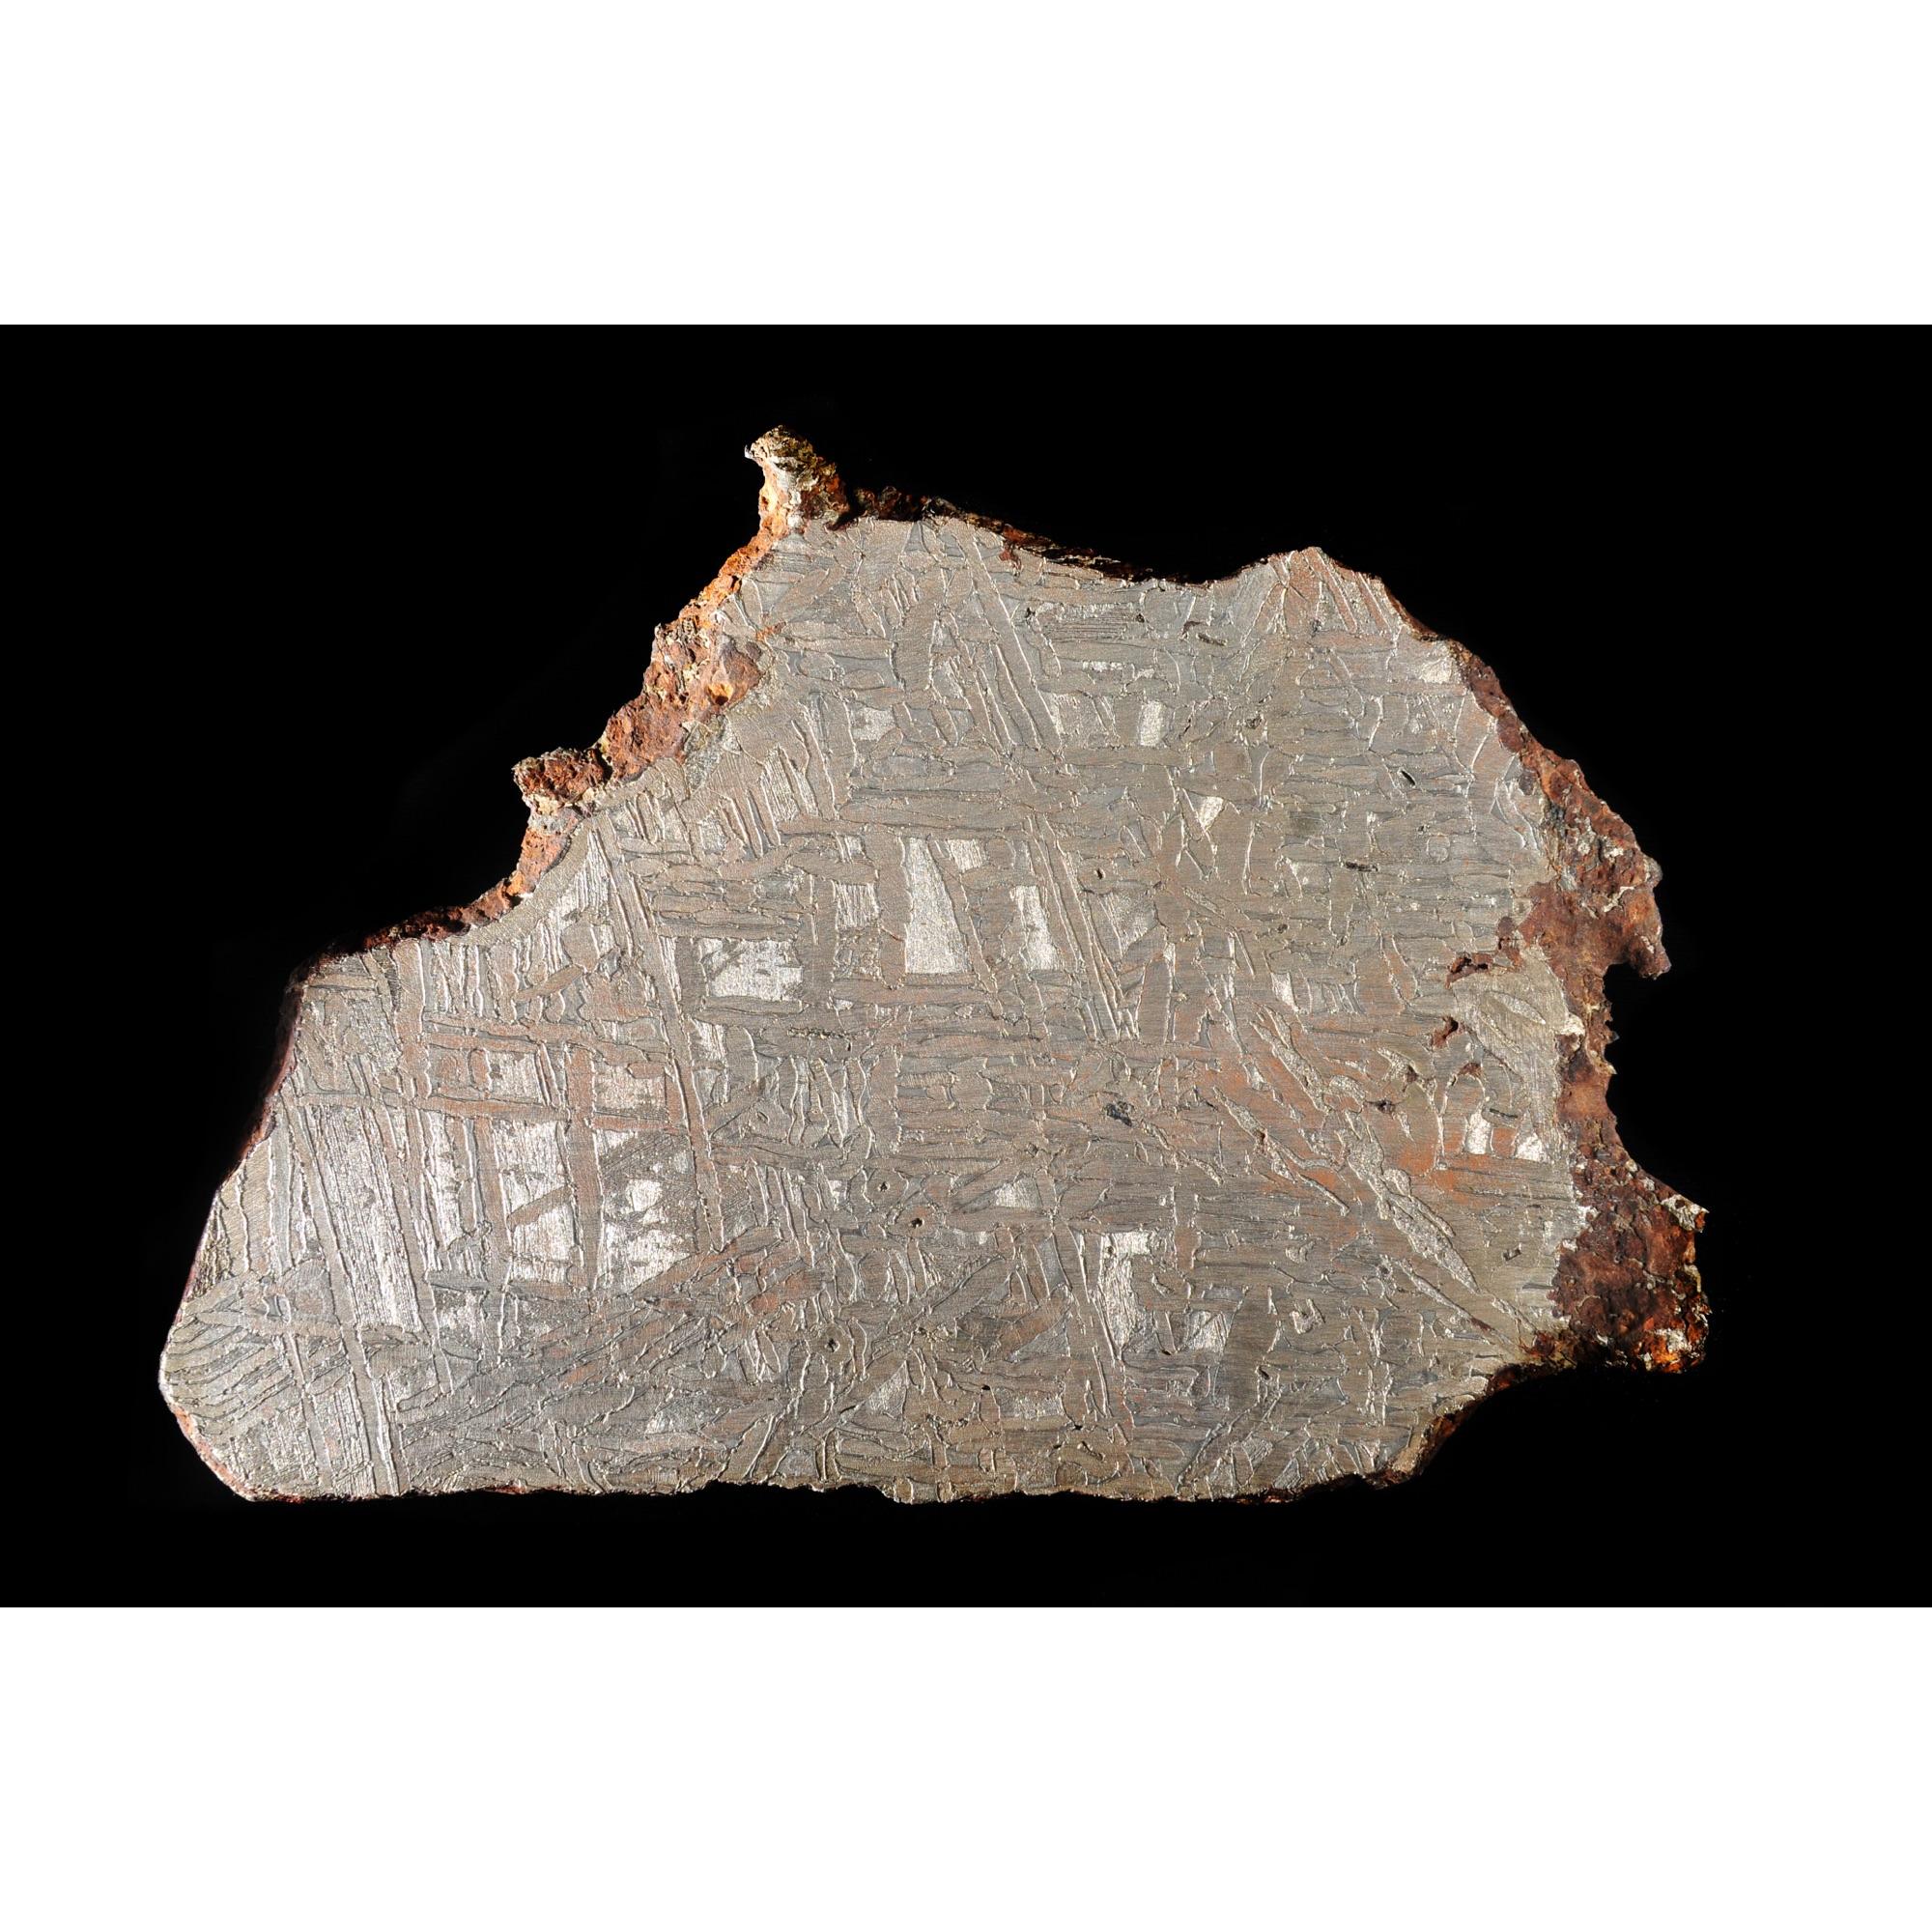 Campo del Cielo meteorite, Argentina, Real Space treasure Prehistoric Online